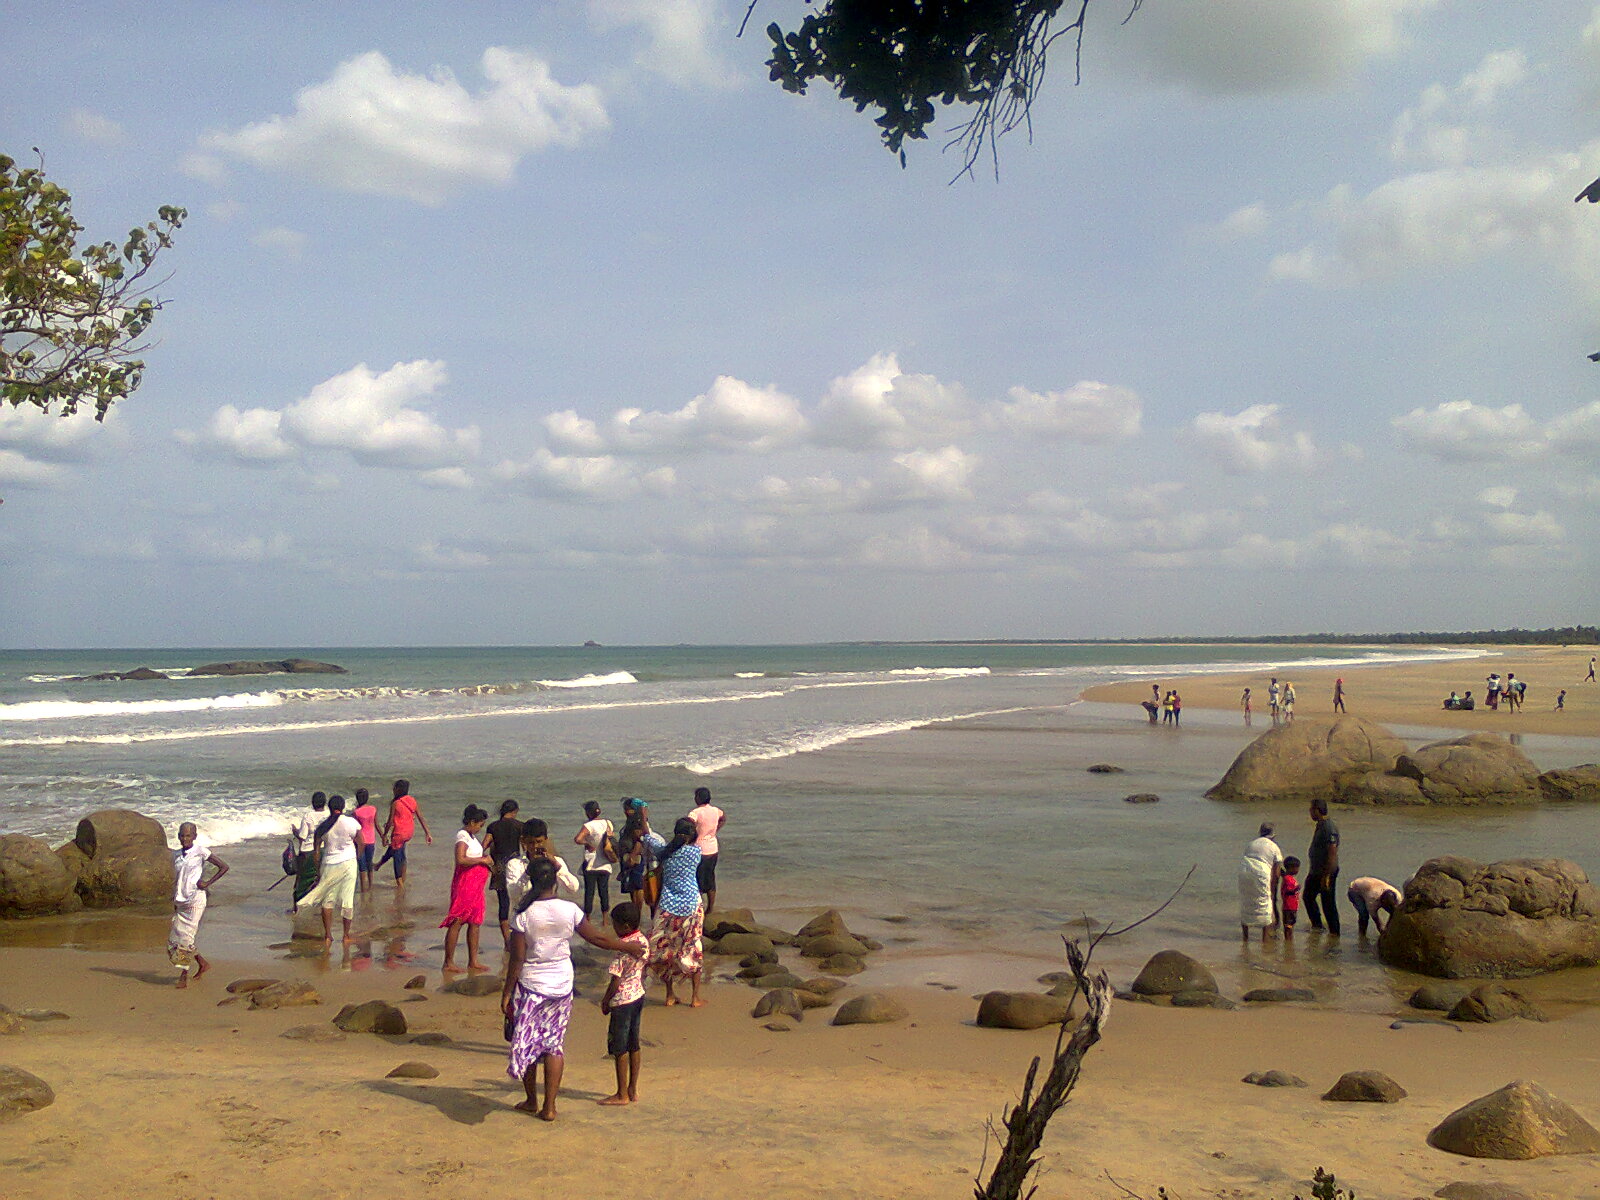 Lanka Patuna Beach'in fotoğrafı - rahatlamayı sevenler arasında popüler bir yer